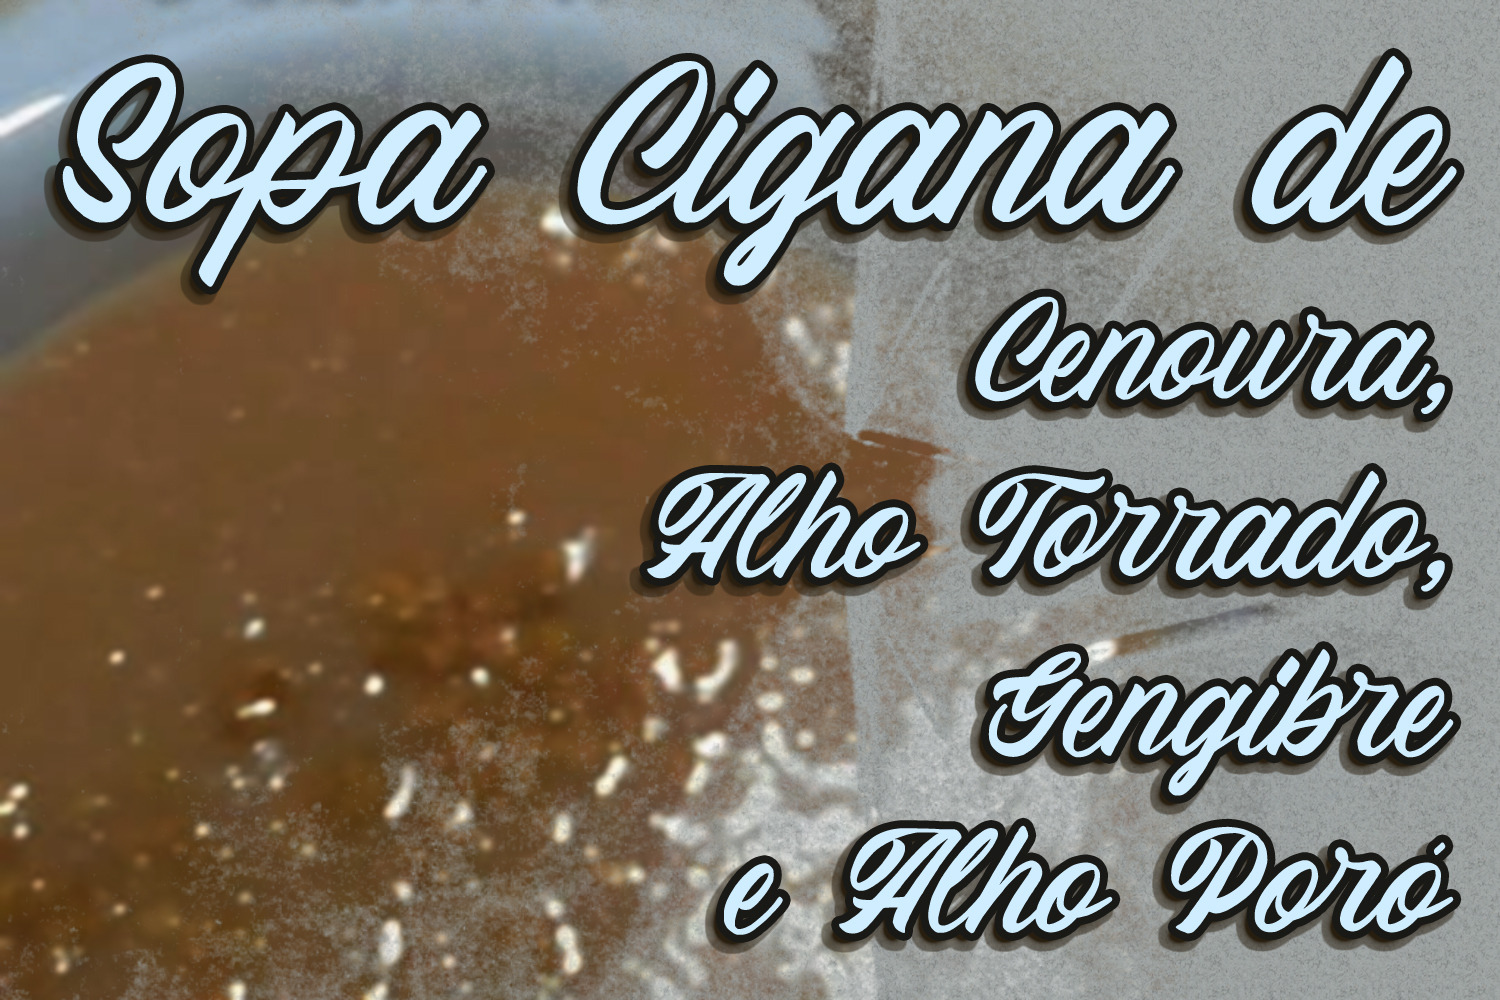 Sopa Cigana de Cenoura, Alho Torrado, Gengibre e Alho Poró